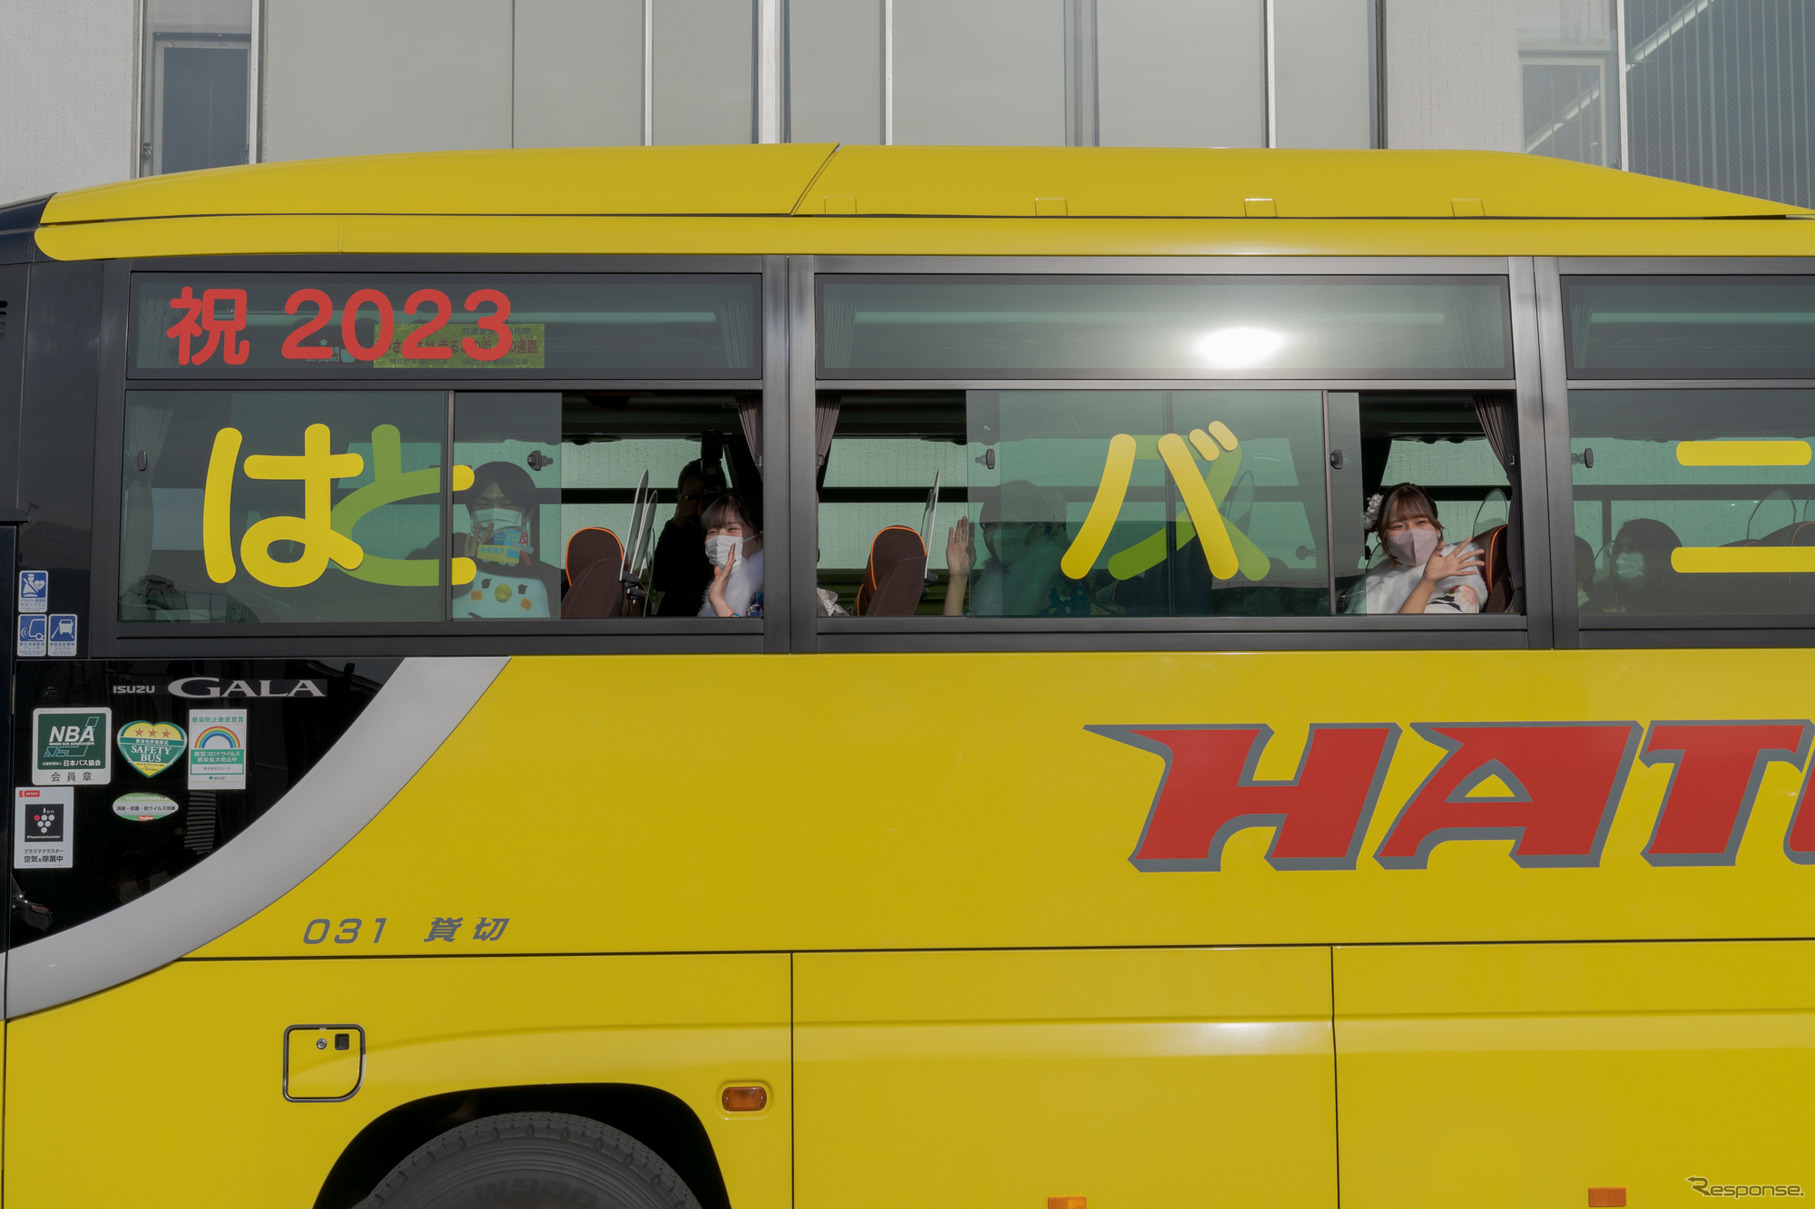 このあと4名は、はとバスに乗って磐井神社に参拝へと向かった。